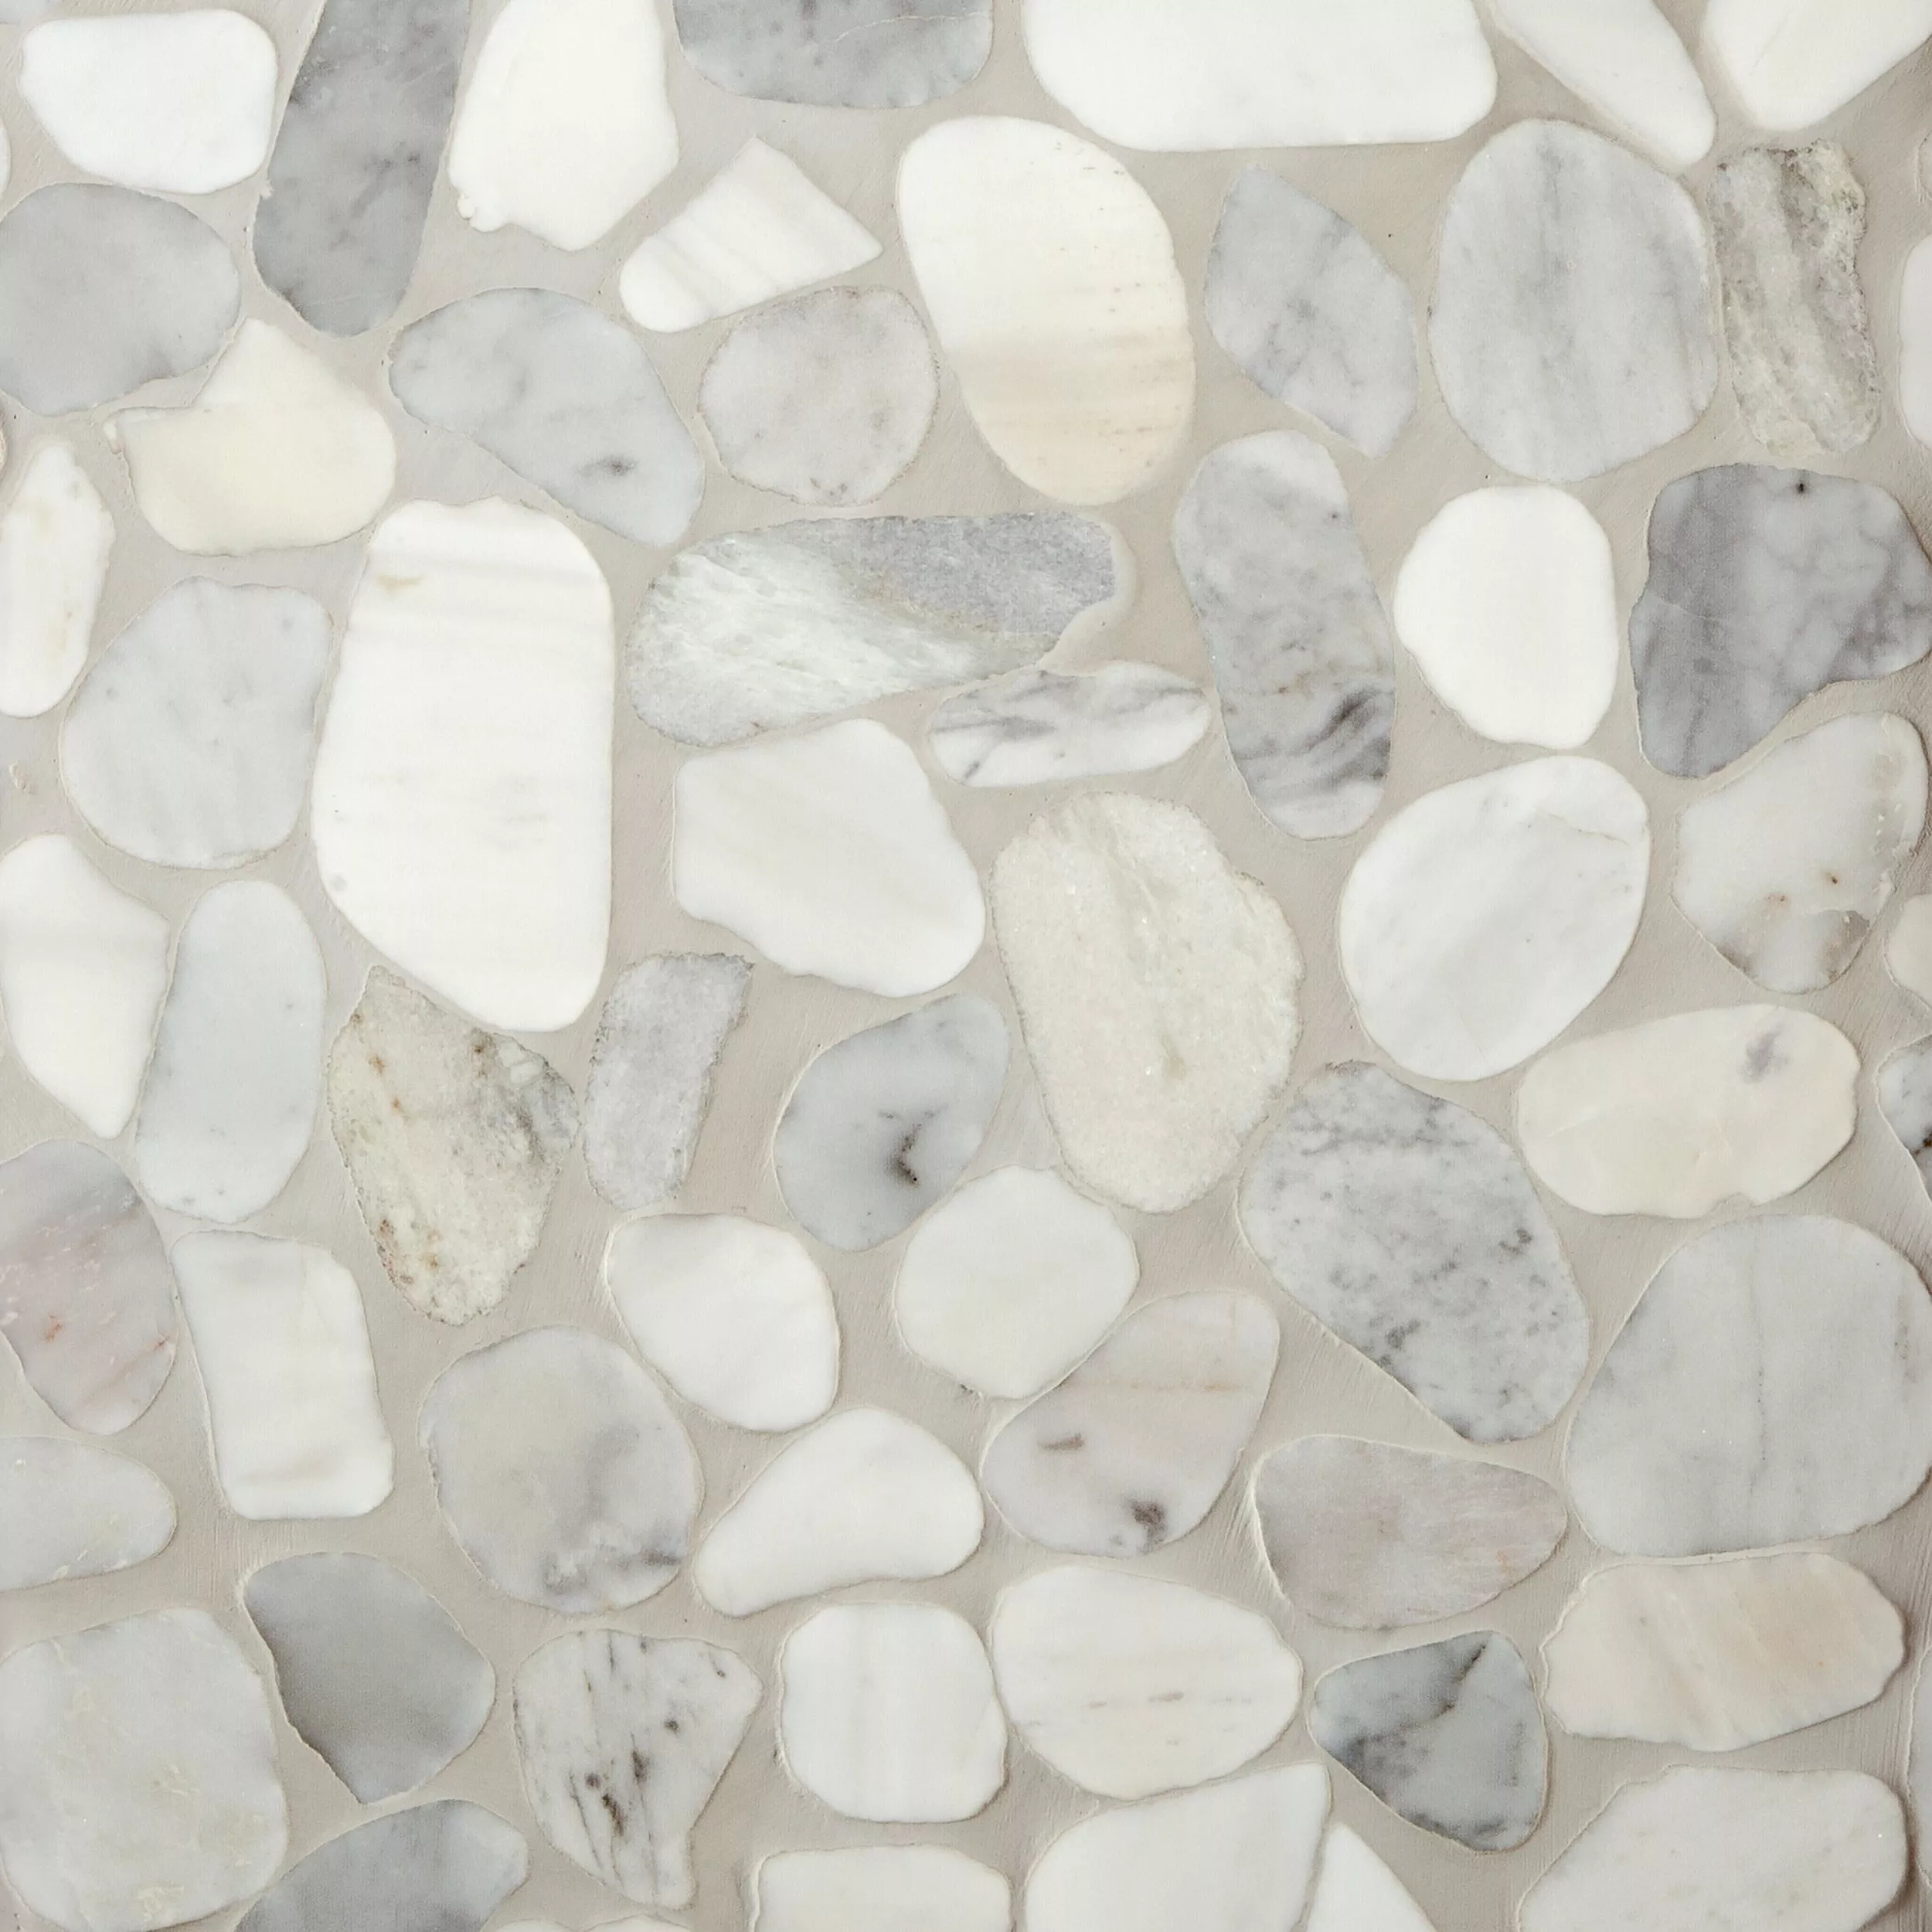 Mixed Carrara Pebble Mosaic